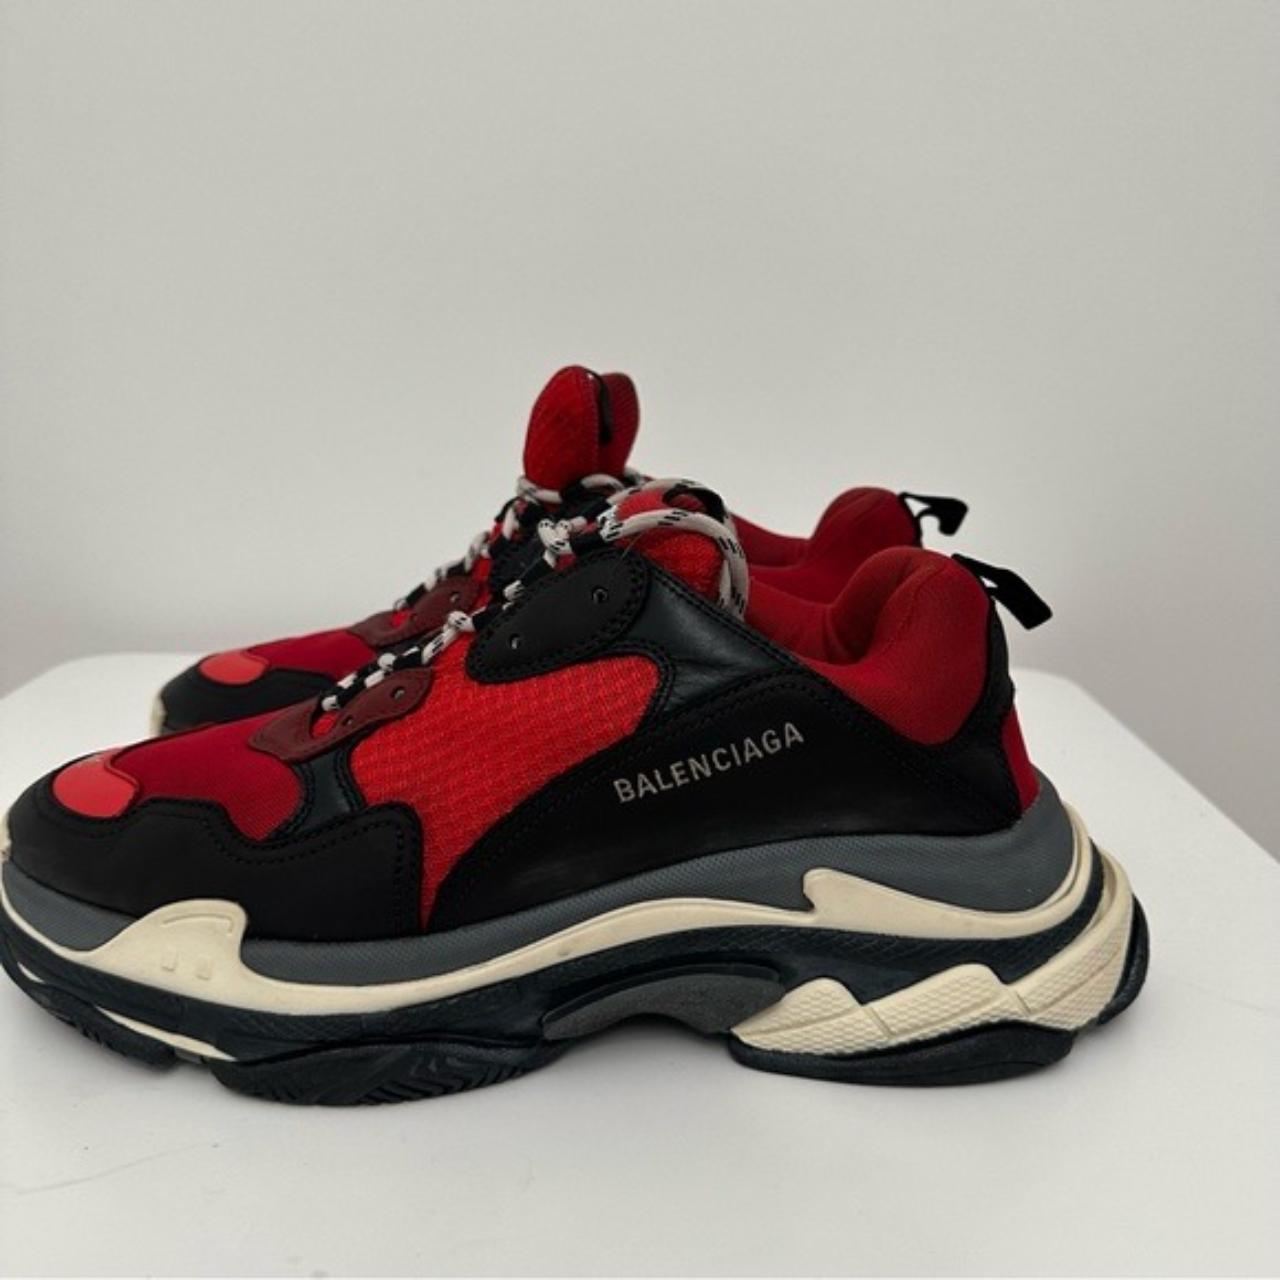 Balenciaga - Adidas Men's Triple S Sneaker - (Red/Black) – DSMNY E-SHOP